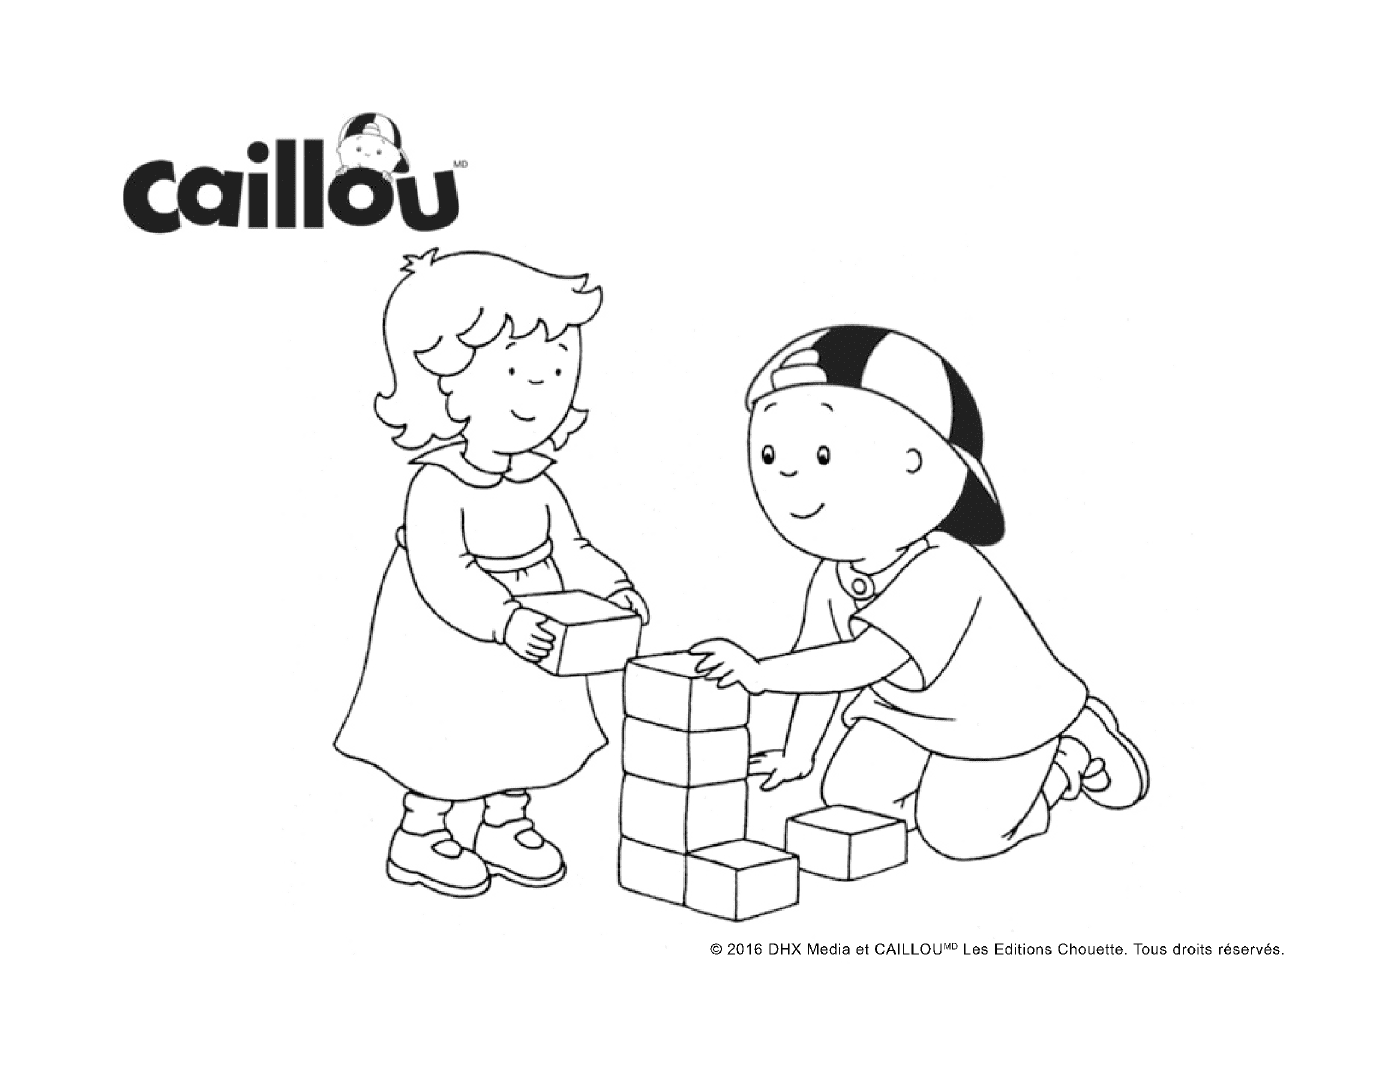  Jogo de bloco com Caillou e sua irmã mais nova 